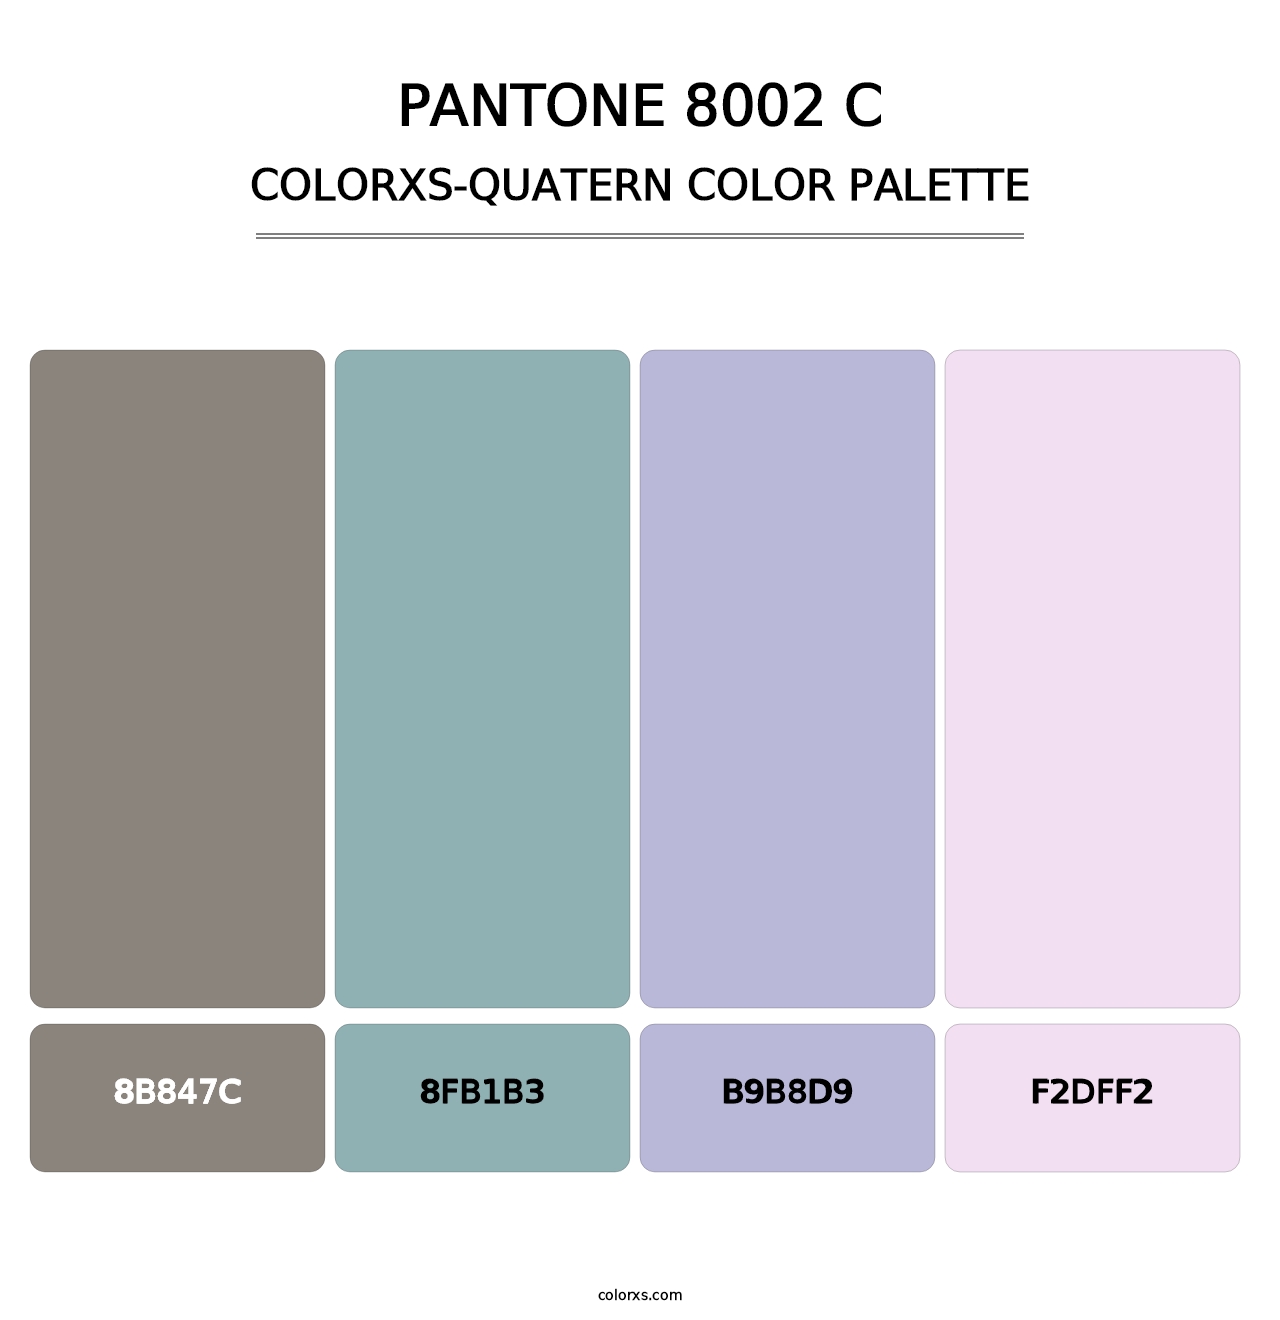 PANTONE 8002 C - Colorxs Quatern Palette